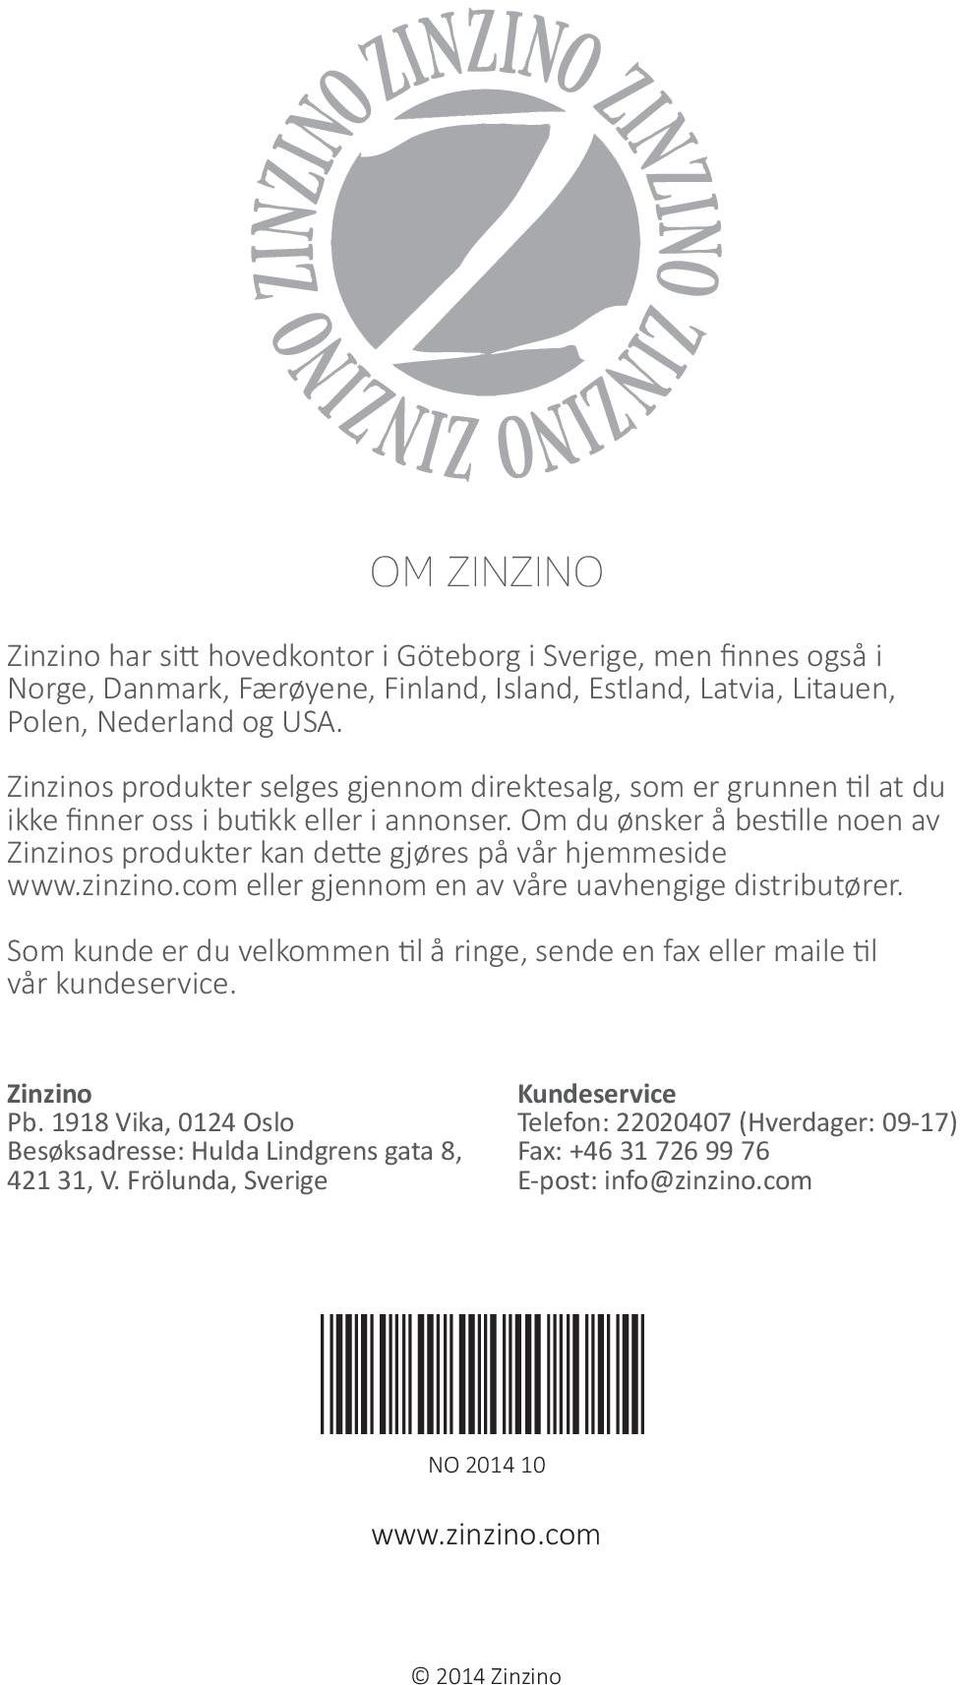 Om du ønsker å bestille noen av Zinzinos produkter kan dette gjøres på vår hjemmeside www.zinzino.com eller gjennom en av våre uavhengige distributører.